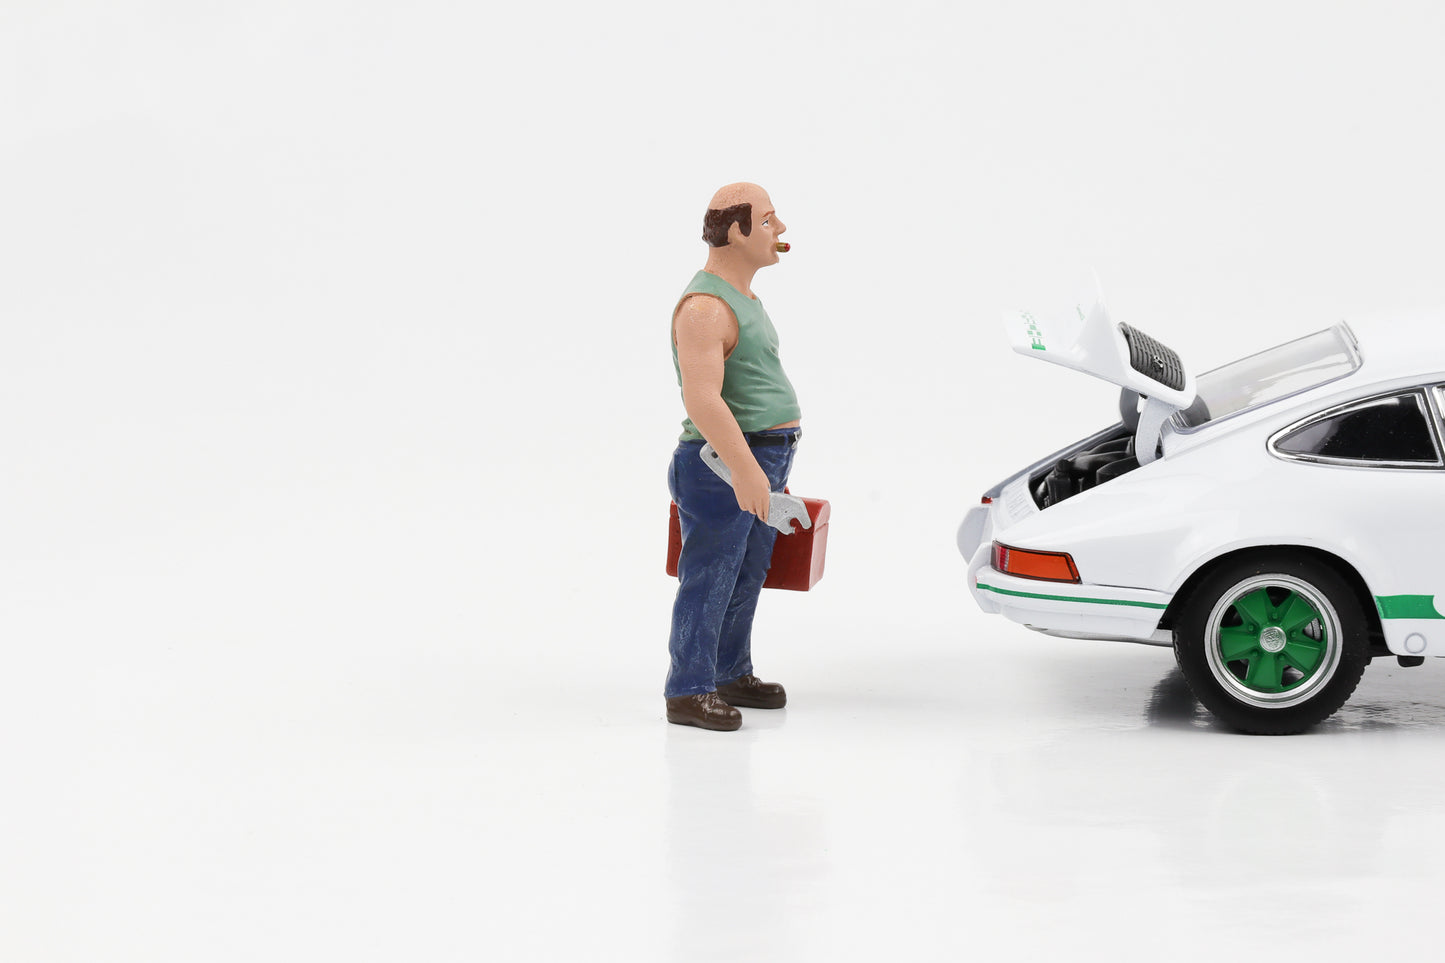 Sam il meccanico d'auto in scala 1:24 con cassetta degli attrezzi. Personaggi Diorama americani